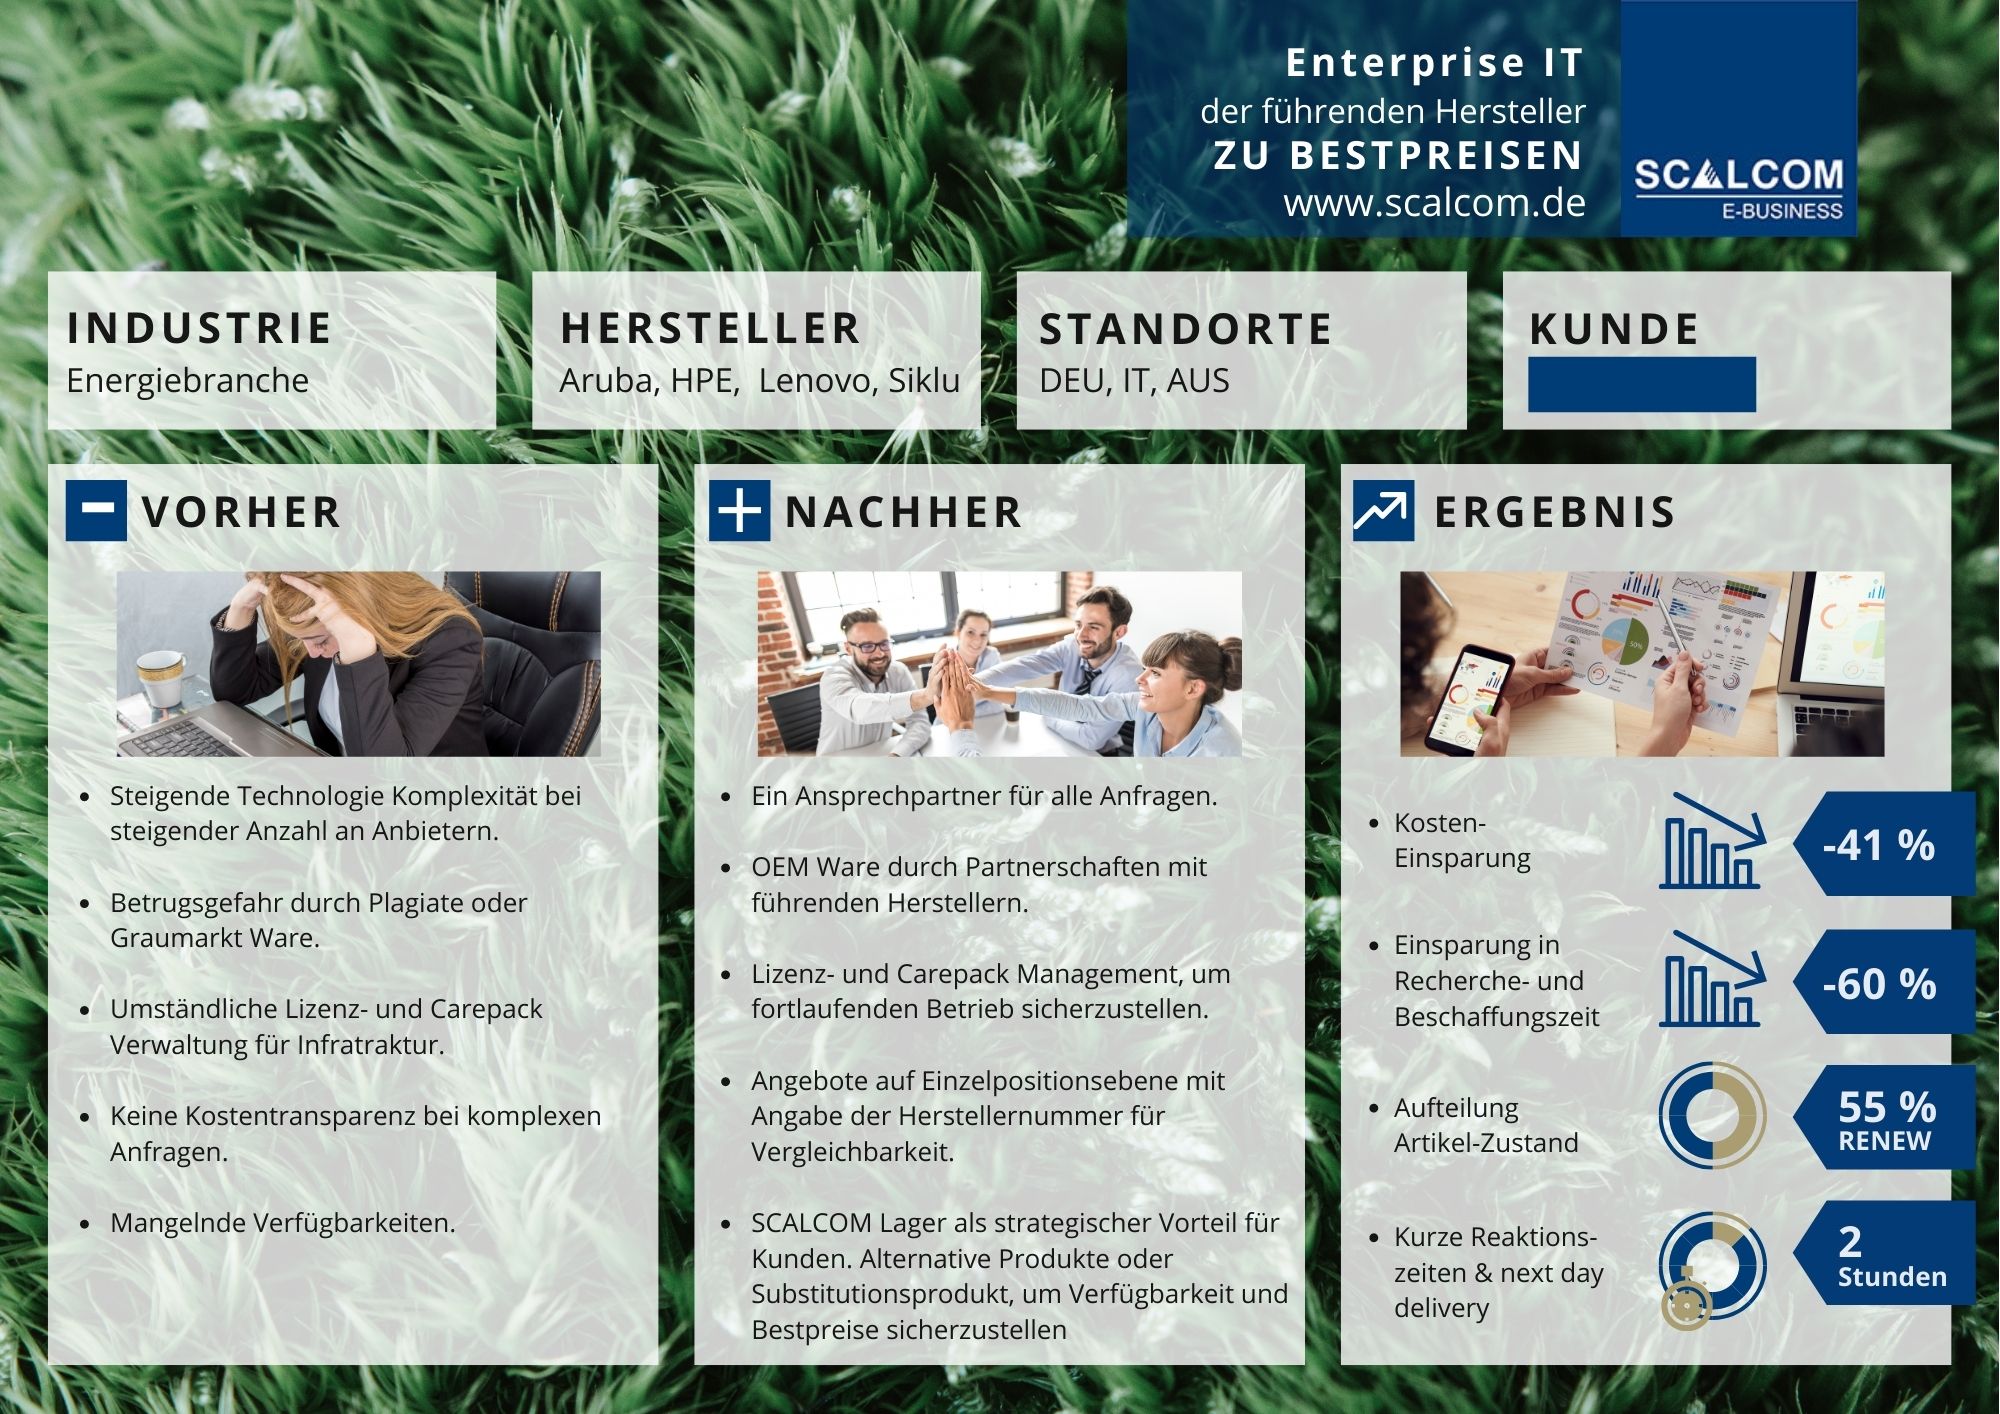 SCALCOM GmbH - Enterprise IT führender Hersteller zu Bestpreisen